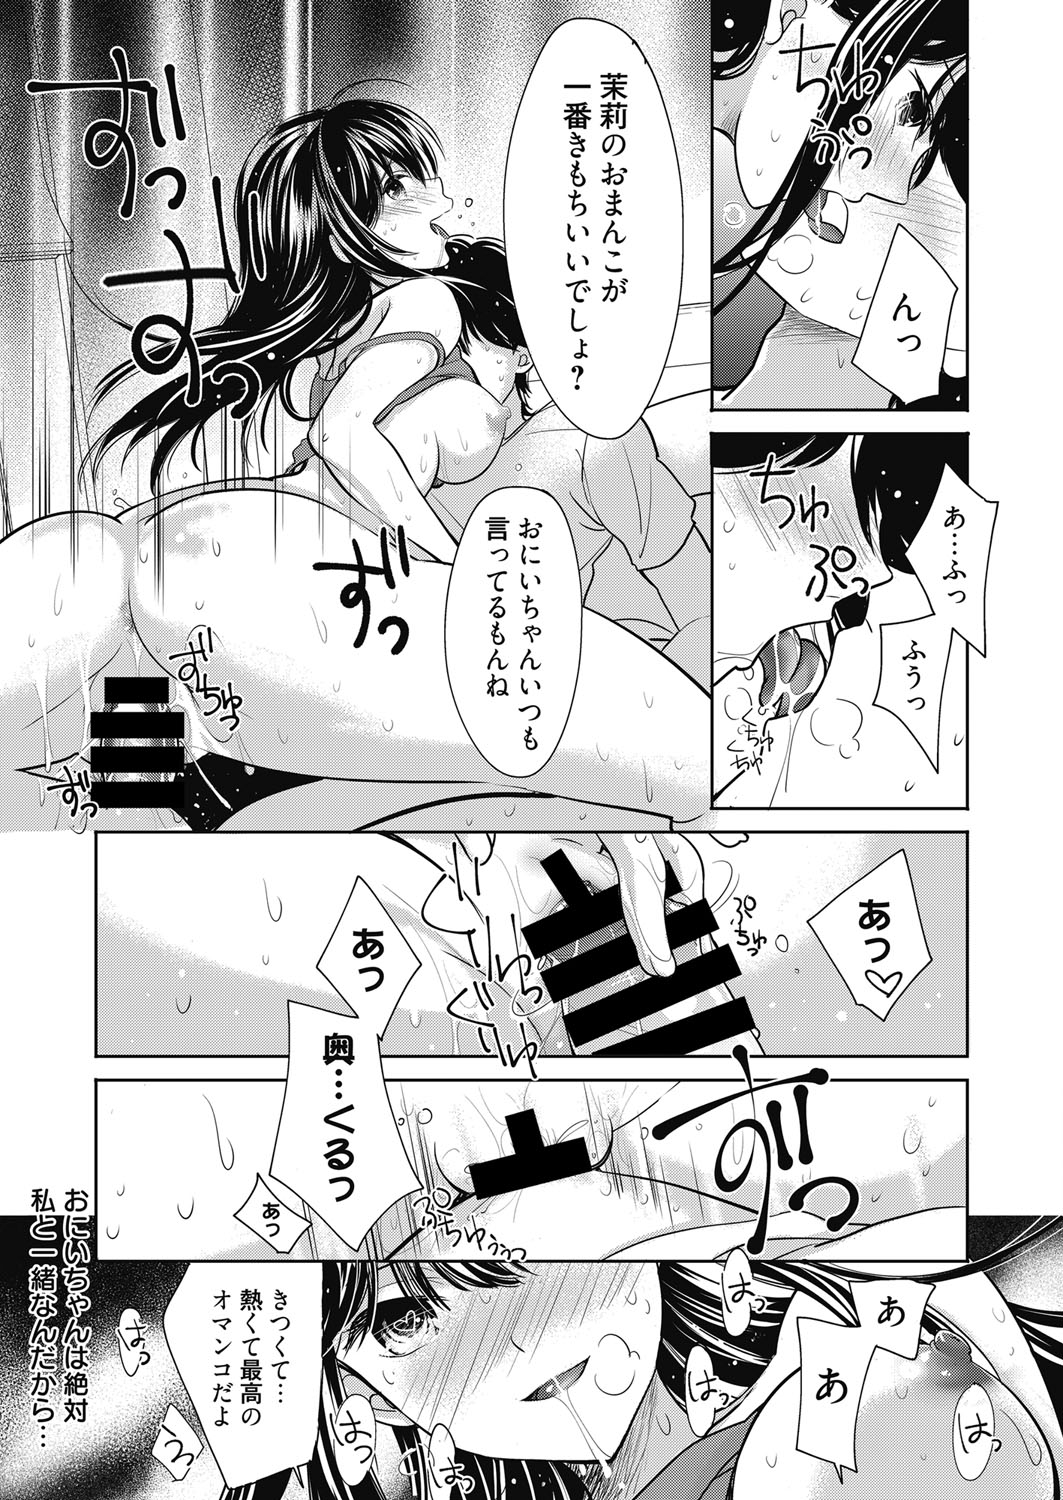 web 漫画ばんがいち Vol.13